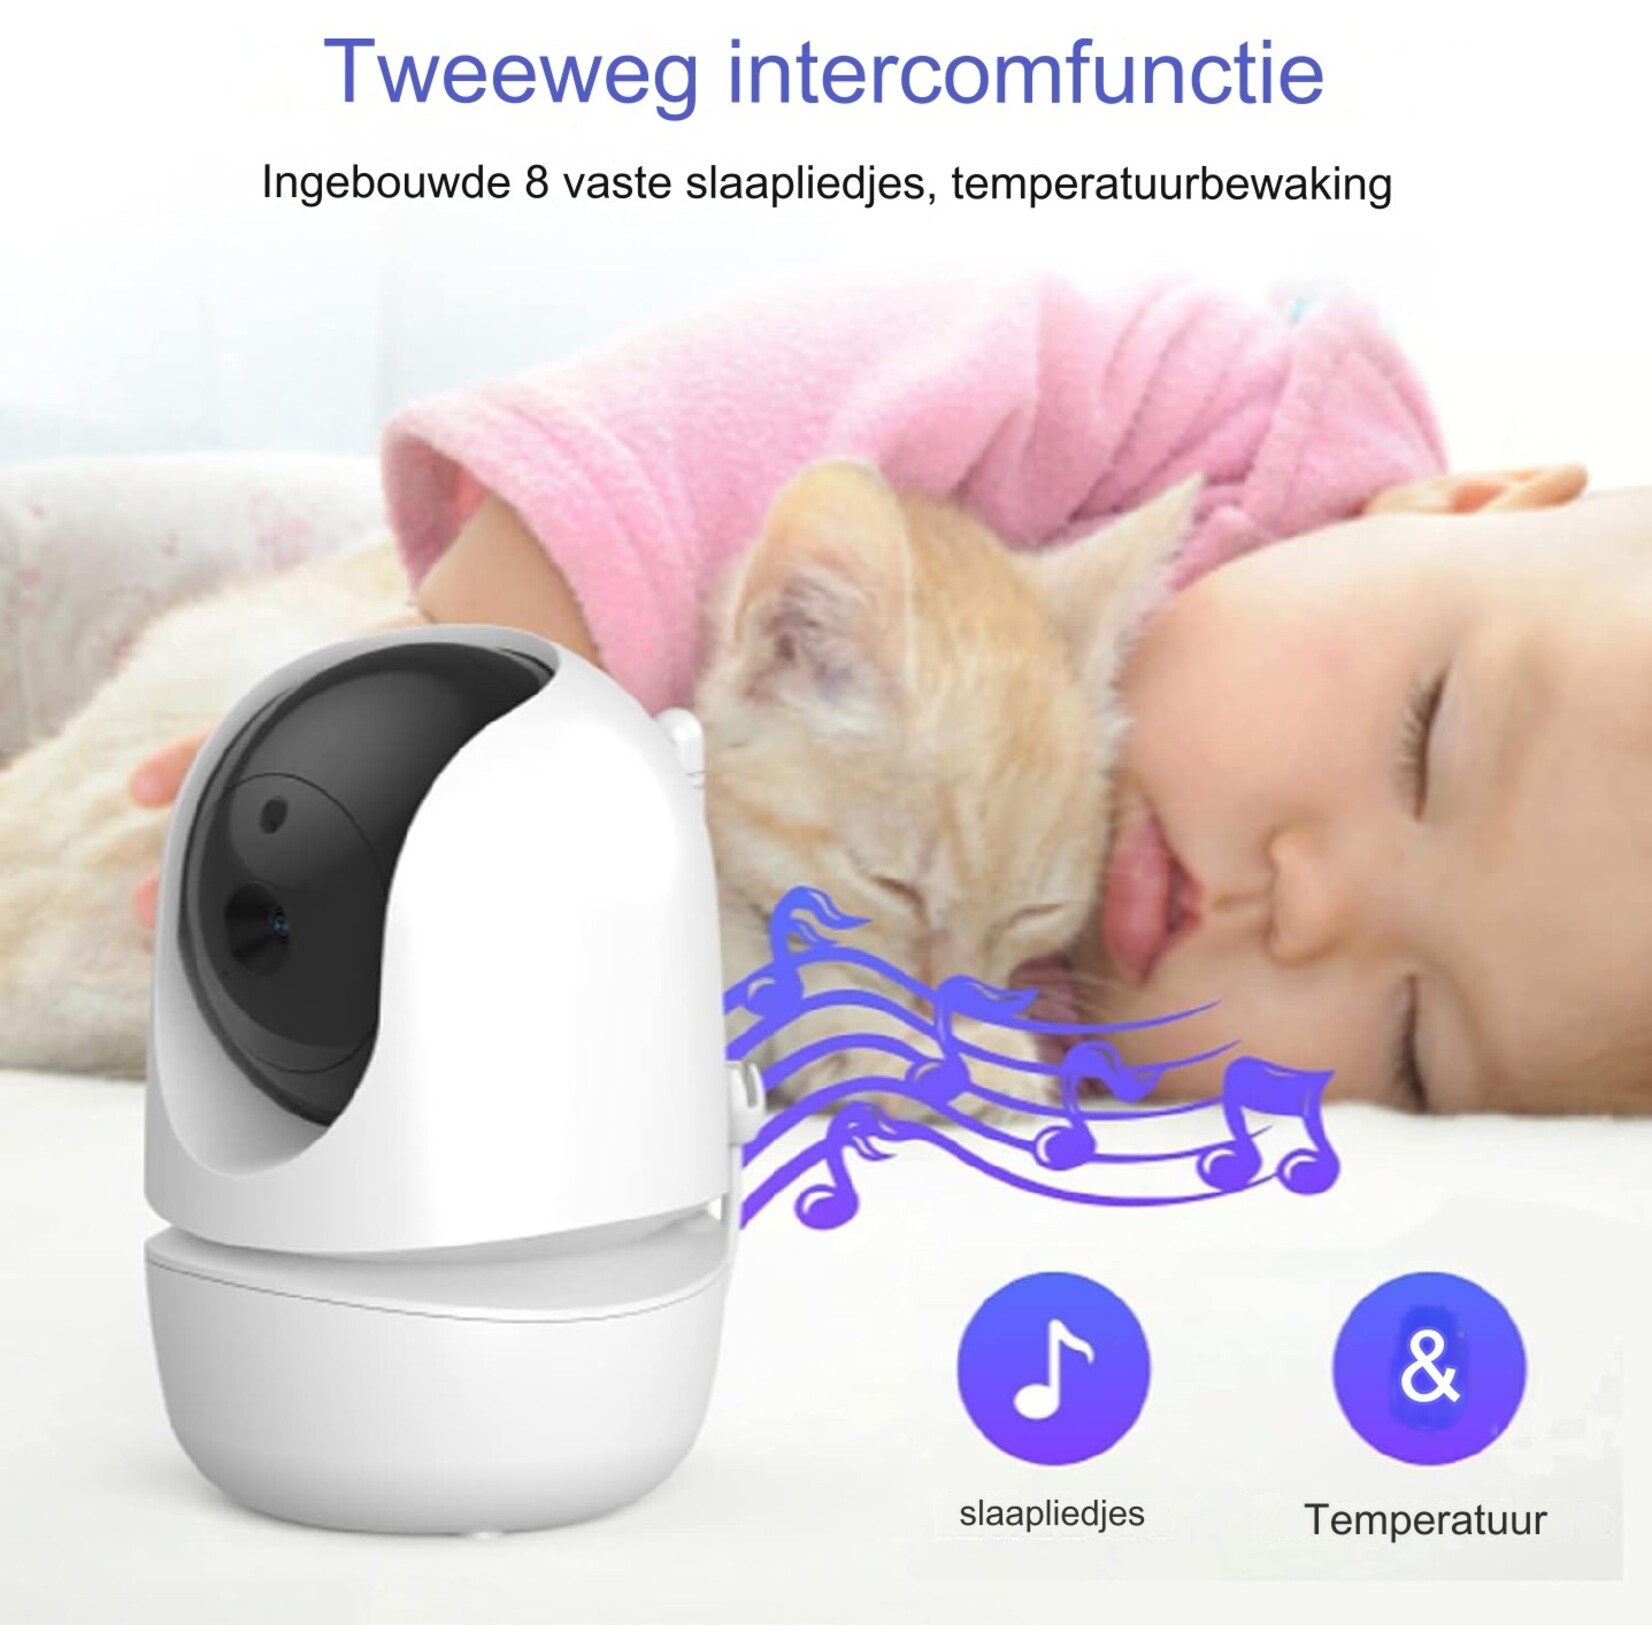 Babyfooncamera, 720P 3.2-inch Videobabyfoon met 2-weg Audio & Infrarood Nachtzicht & Temperatuurbewaking